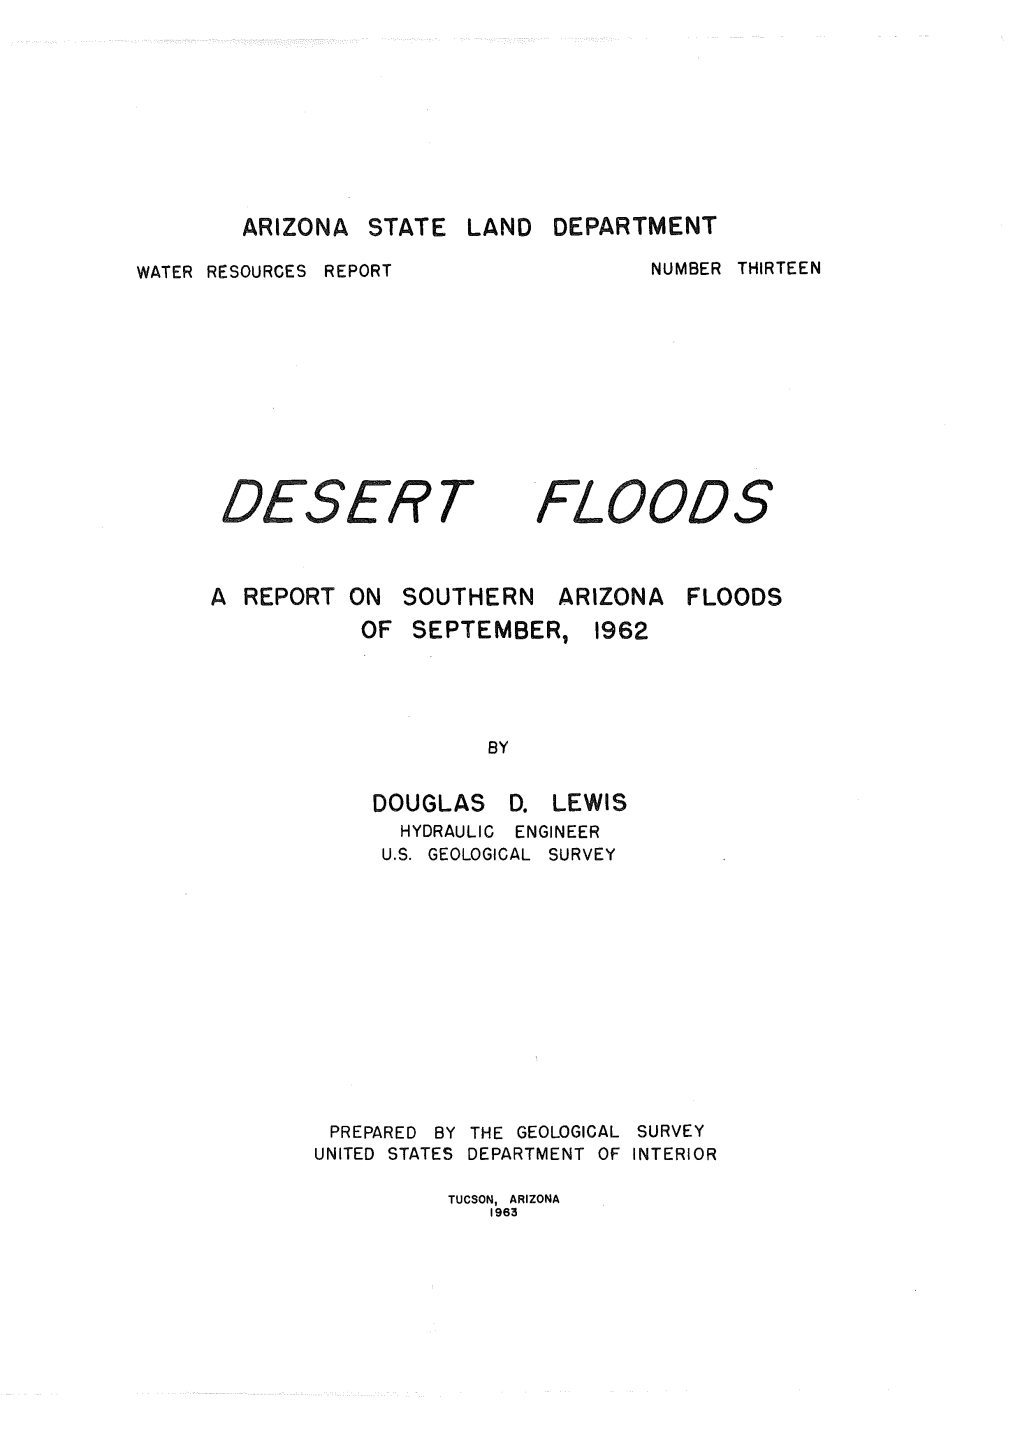 Desert Floods